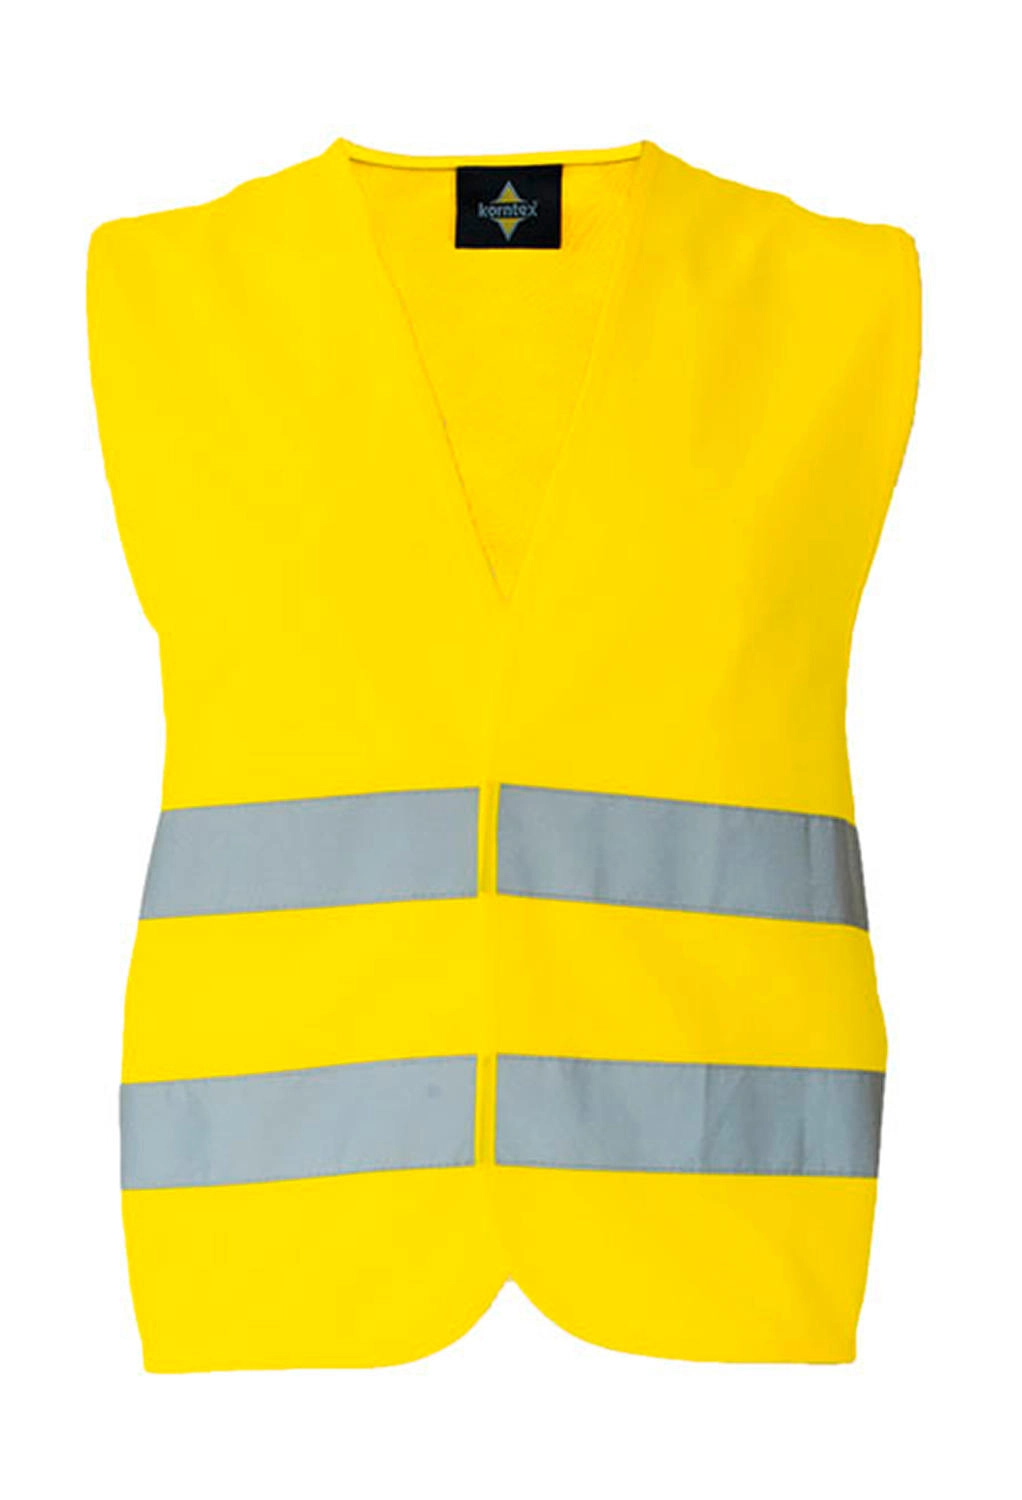 Basic Car Safety Vest for Print 